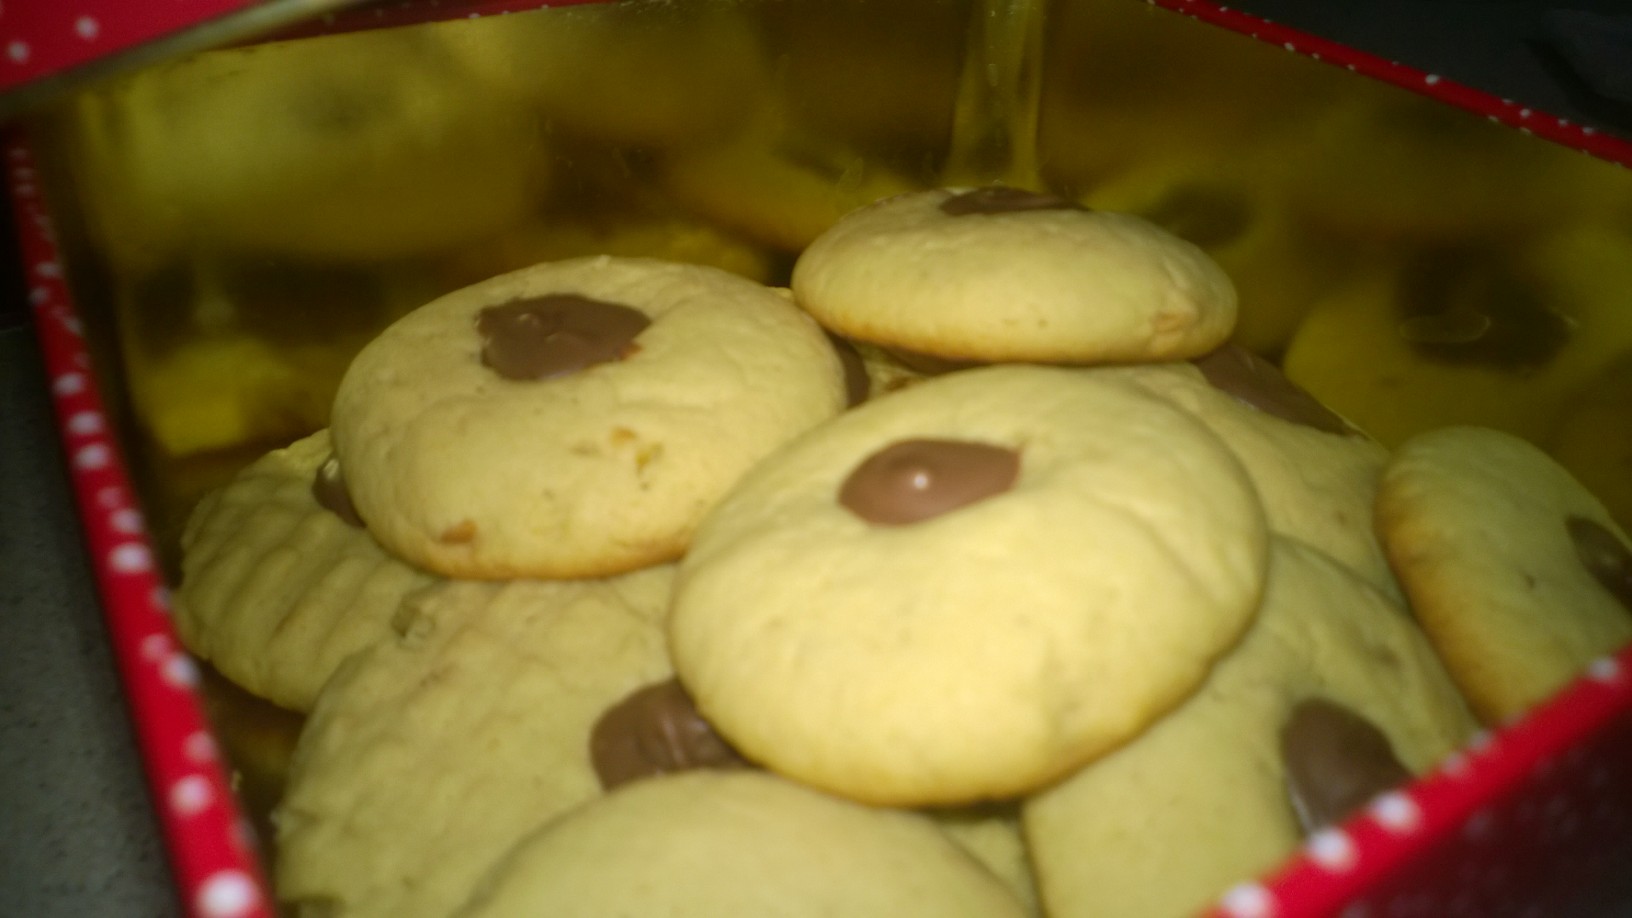 Peanut butter cookies/Fursecuri cu unt de arahide